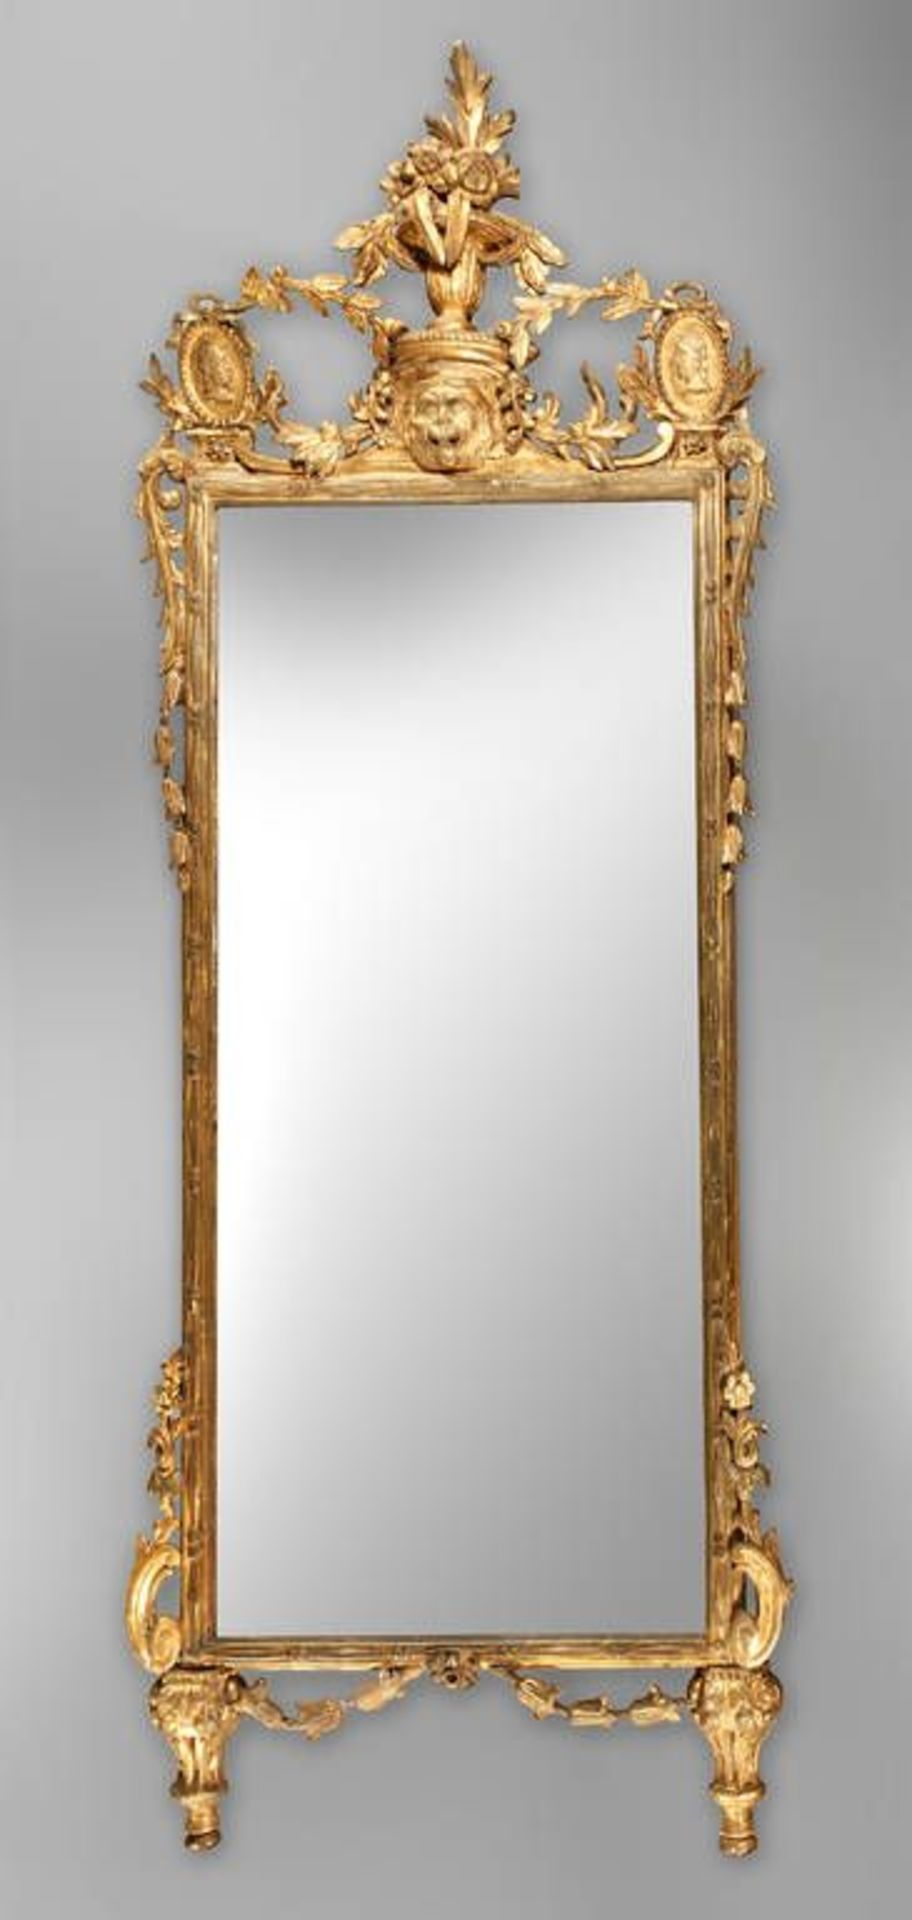 Klassizistischer Spiegel  Florenz, um 1780, Holz geschnitzt, gestuckt und vergoldet, reich